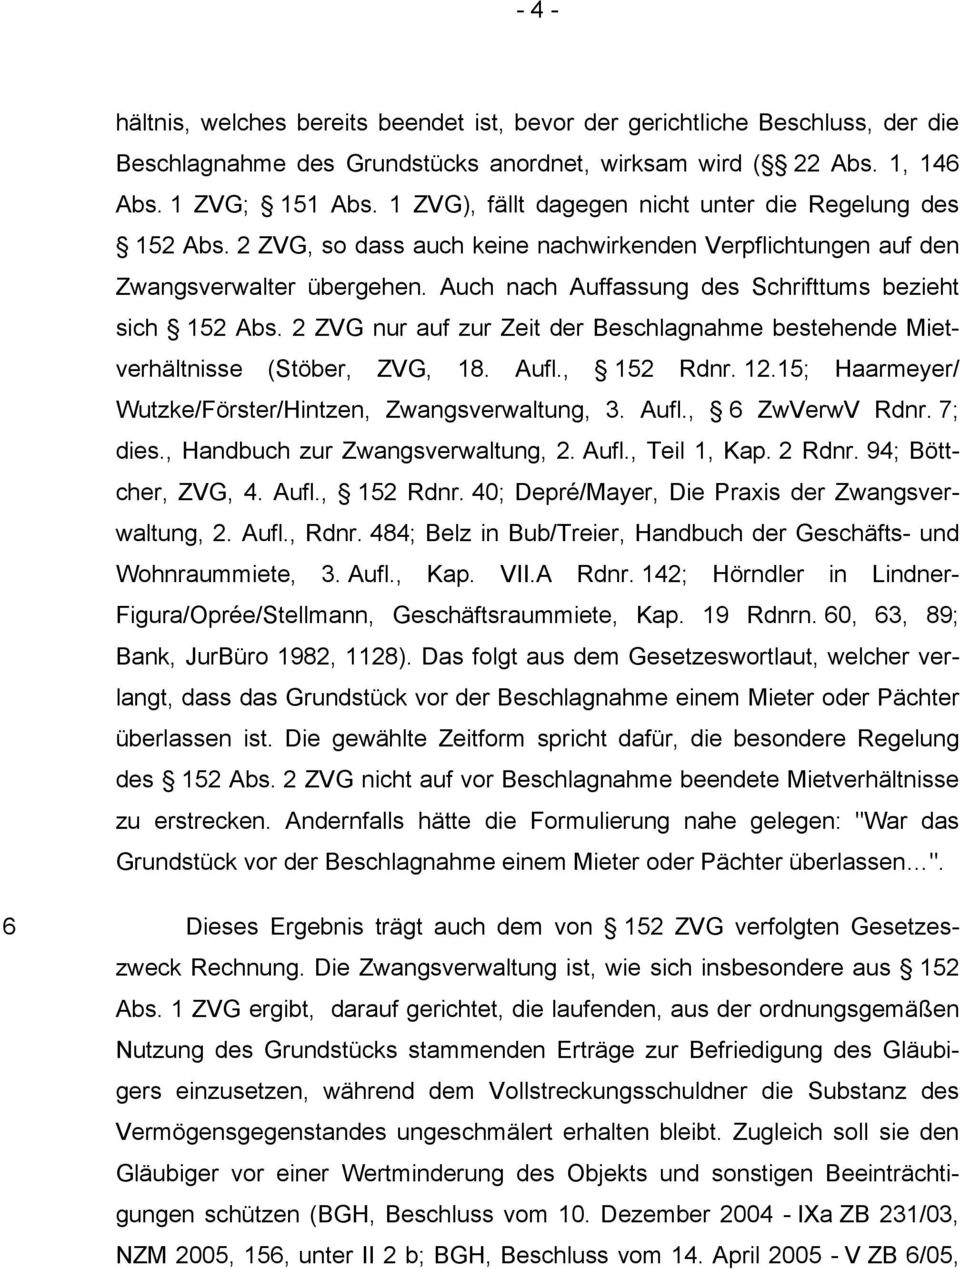 Auch nach Auffassung des Schrifttums bezieht sich 152 Abs. 2 ZVG nur auf zur Zeit der Beschlagnahme bestehende Mietverhältnisse (Stöber, ZVG, 18. Aufl., 152 Rdnr. 12.